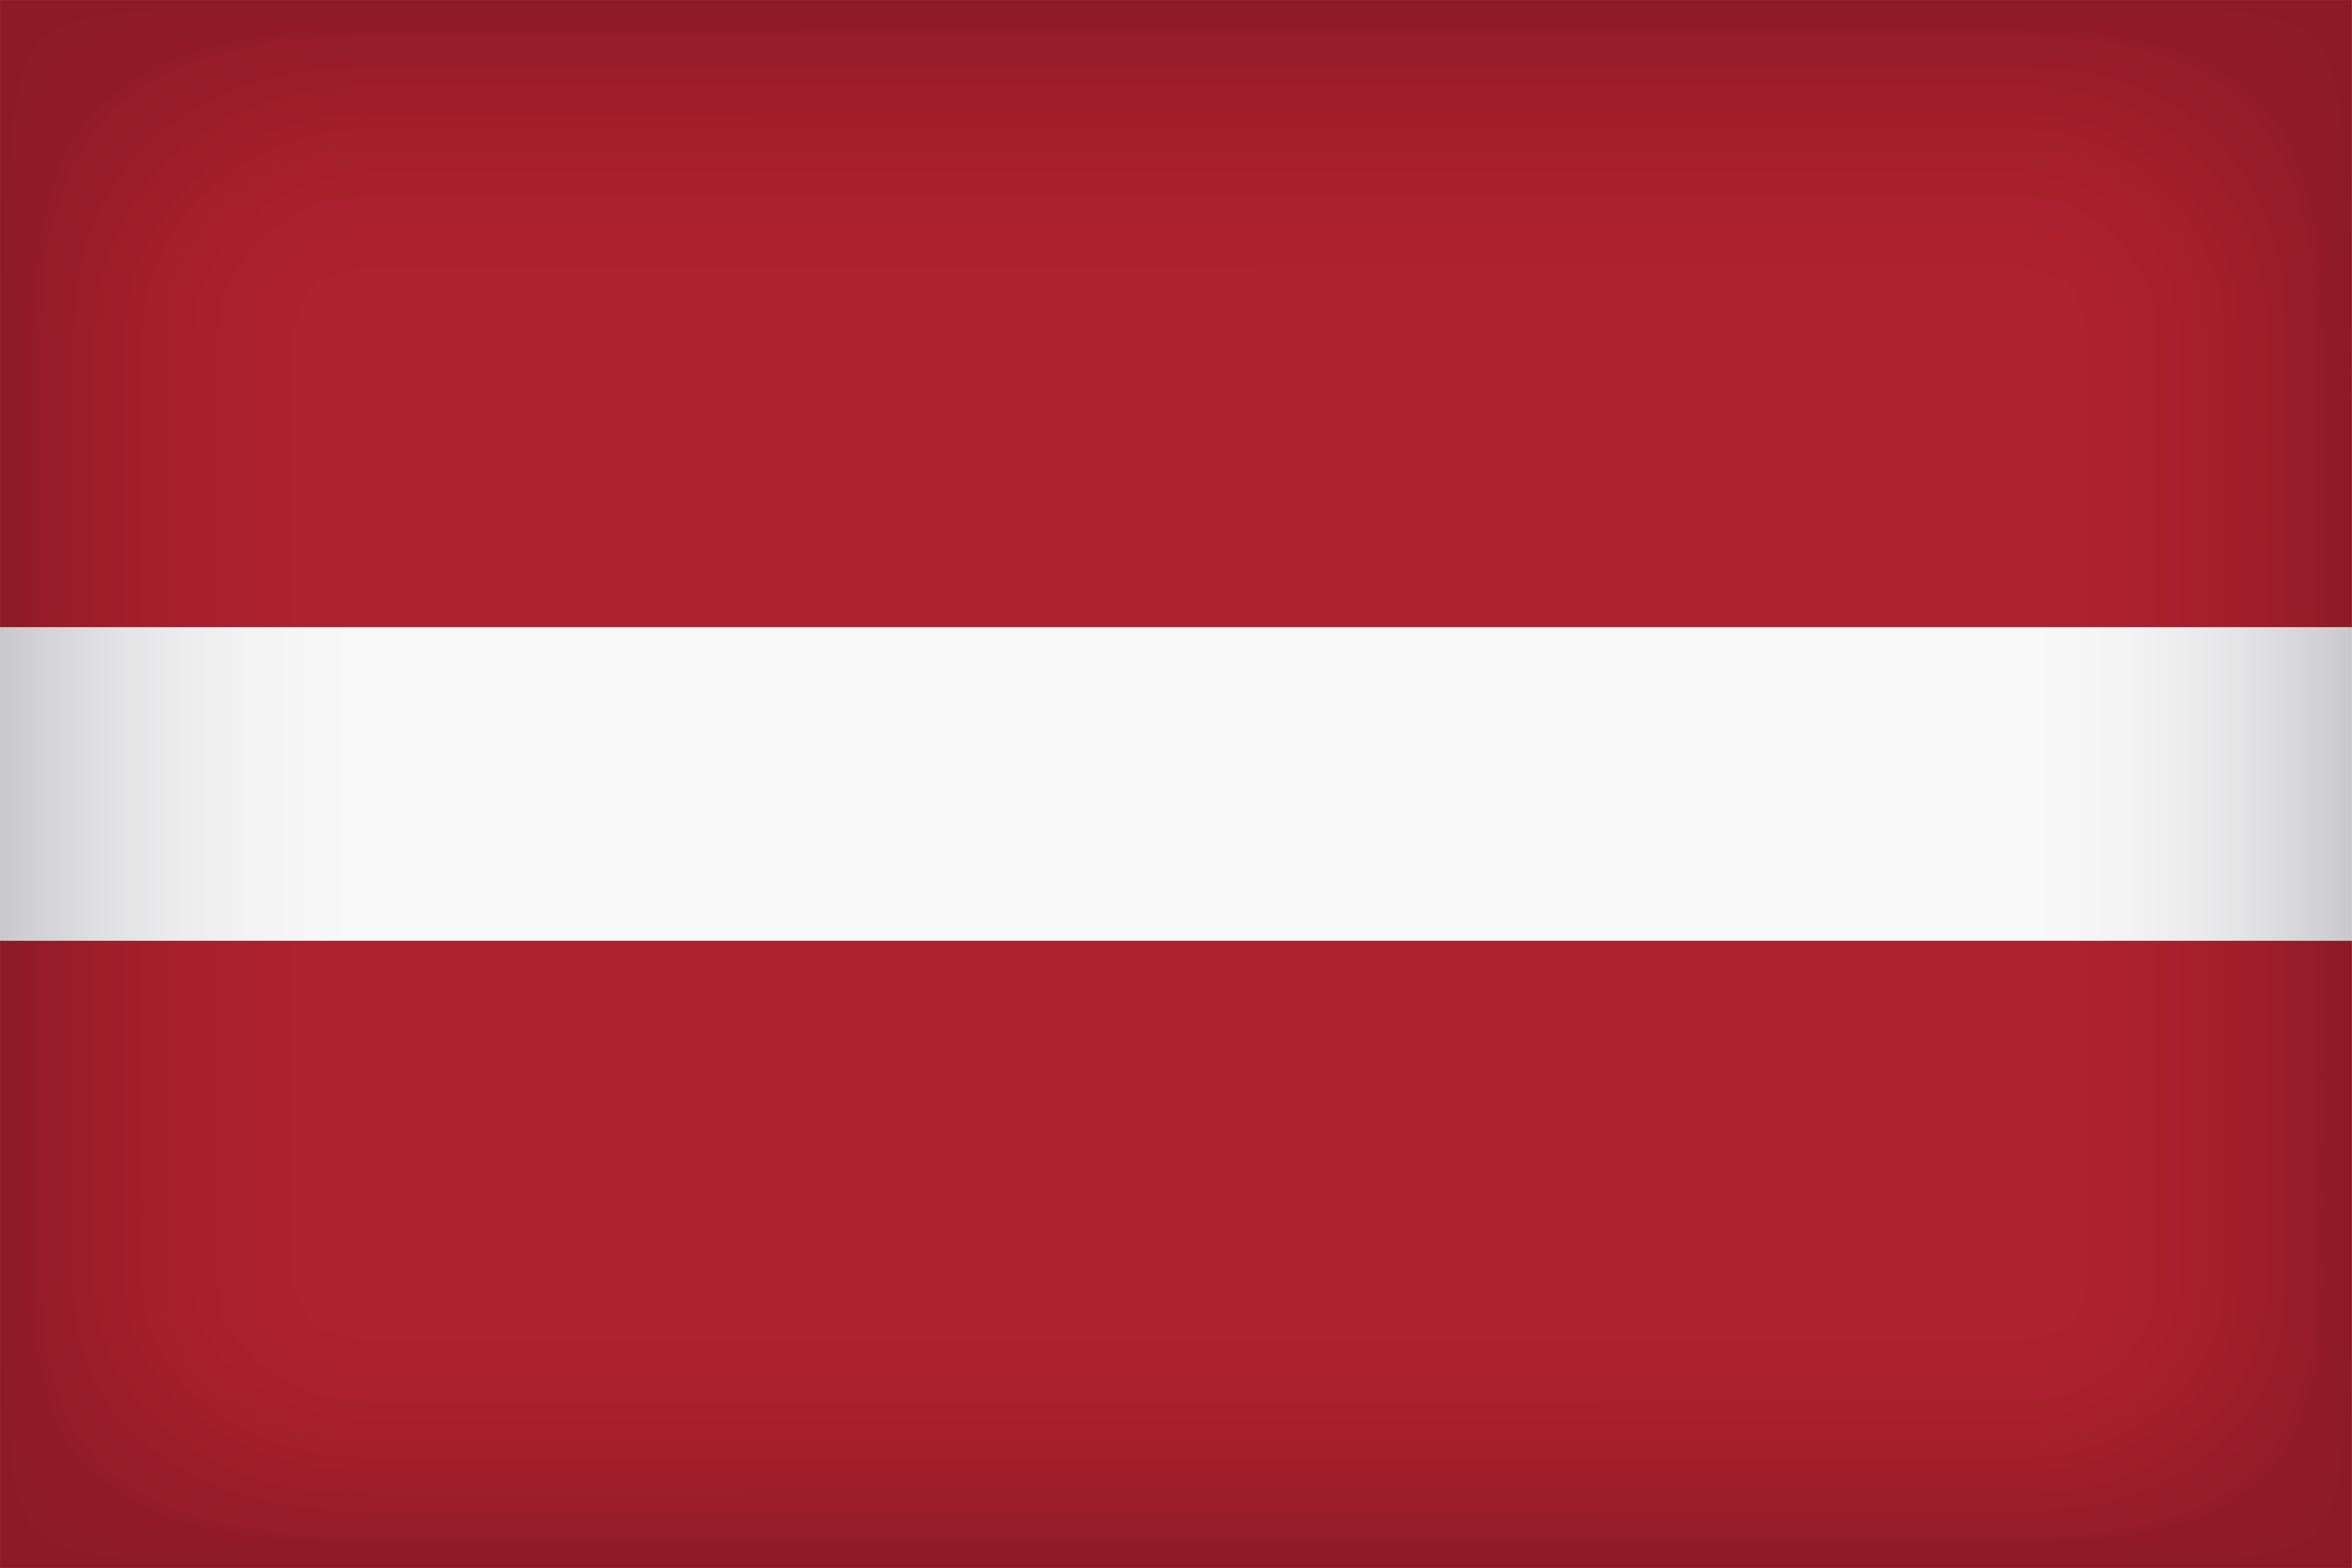 Latvia Large Flag Quality Image